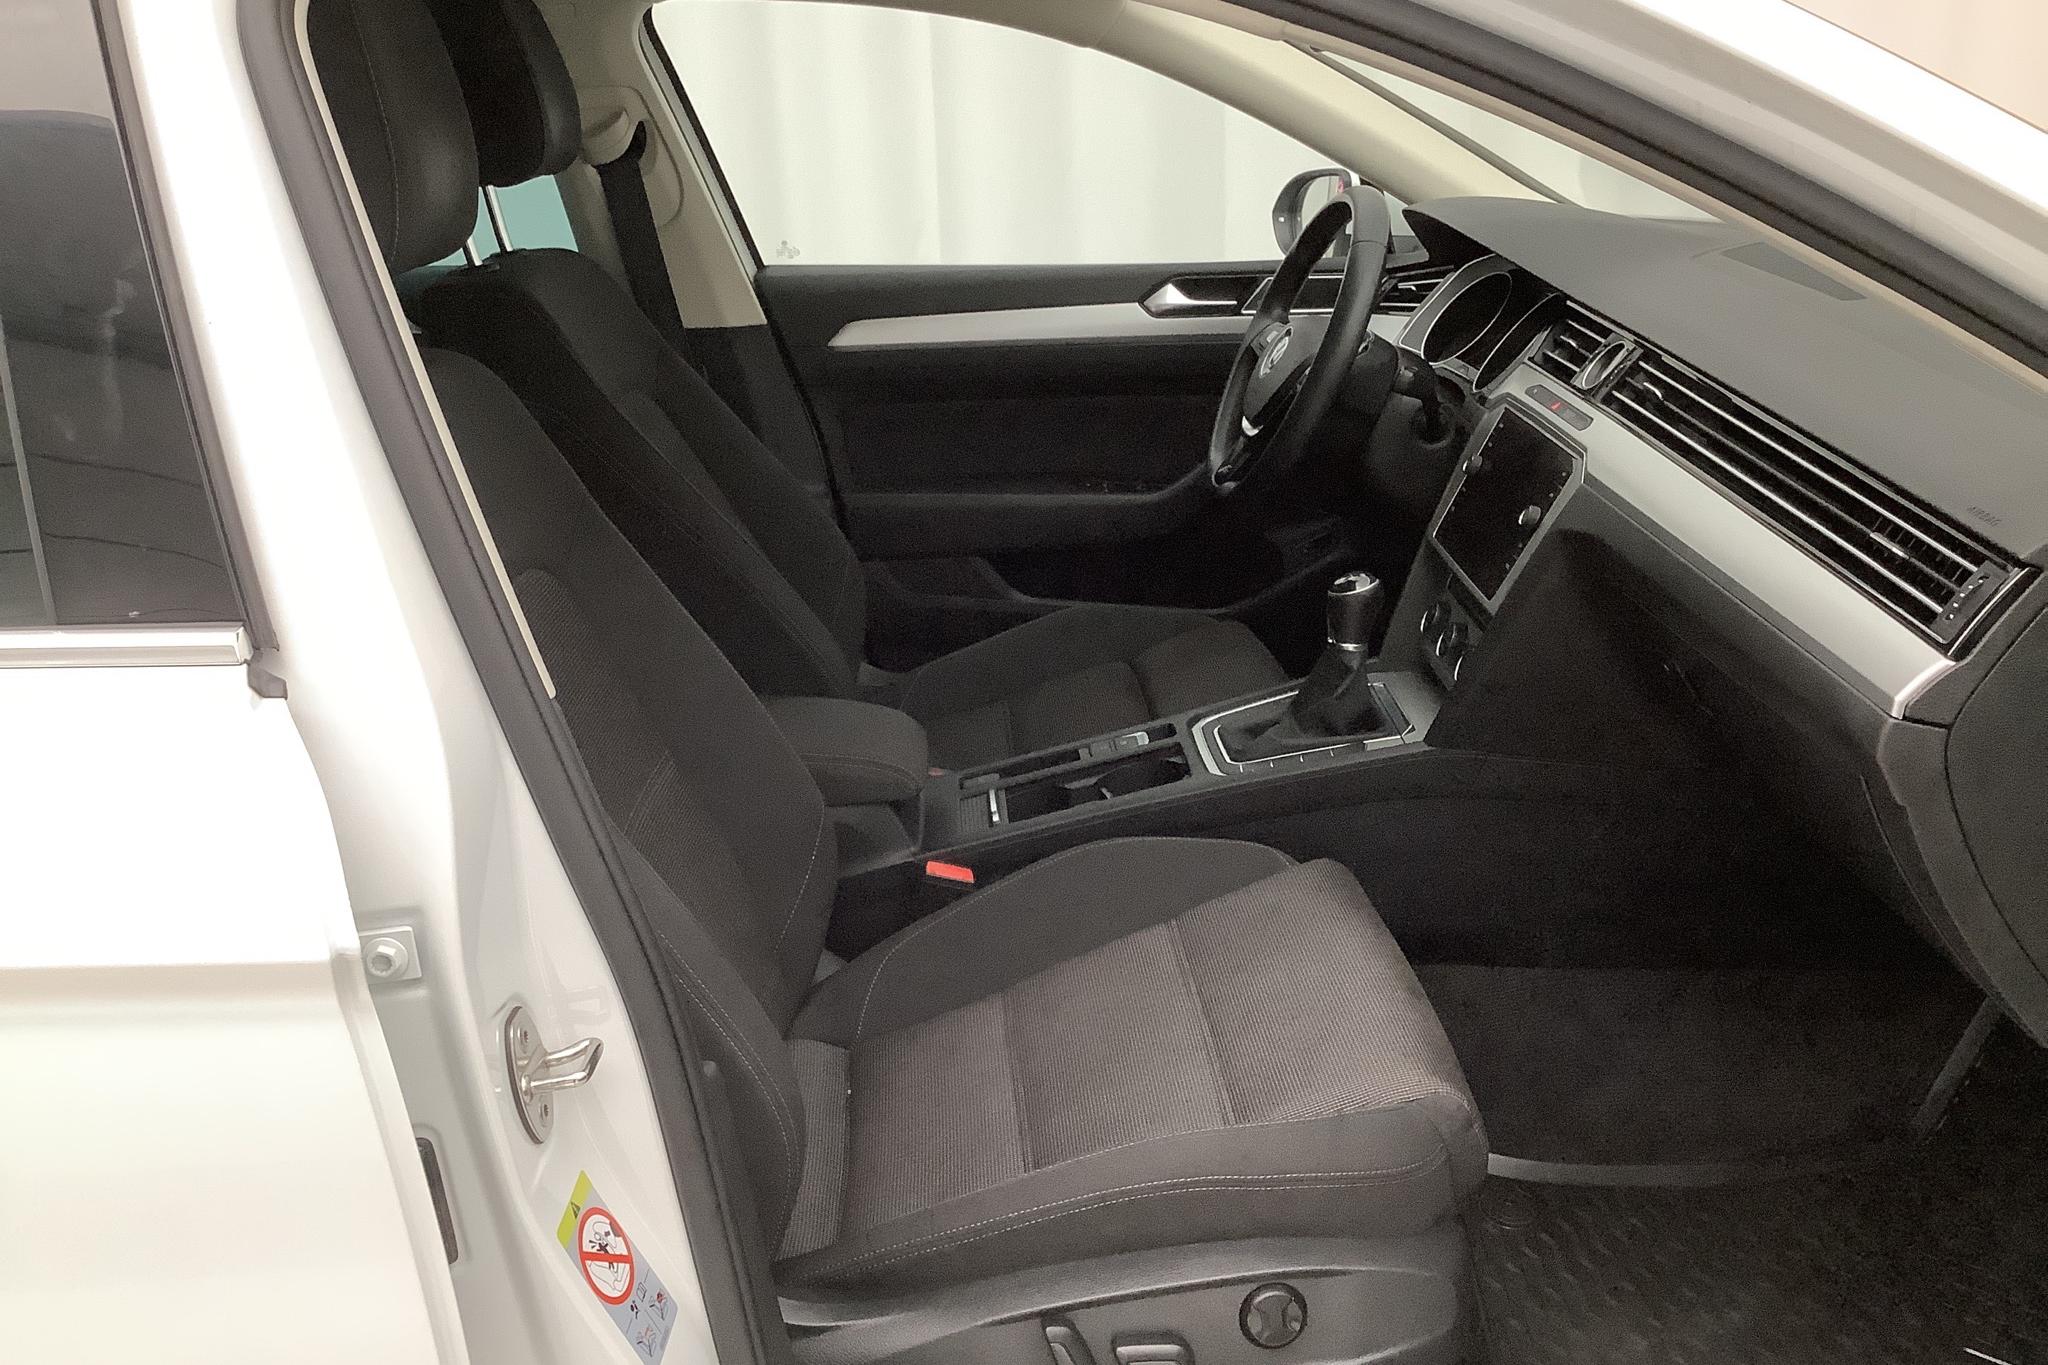 VW Passat 2.0 TDI Sportscombi (150hk) - 97 920 km - Manual - white - 2018